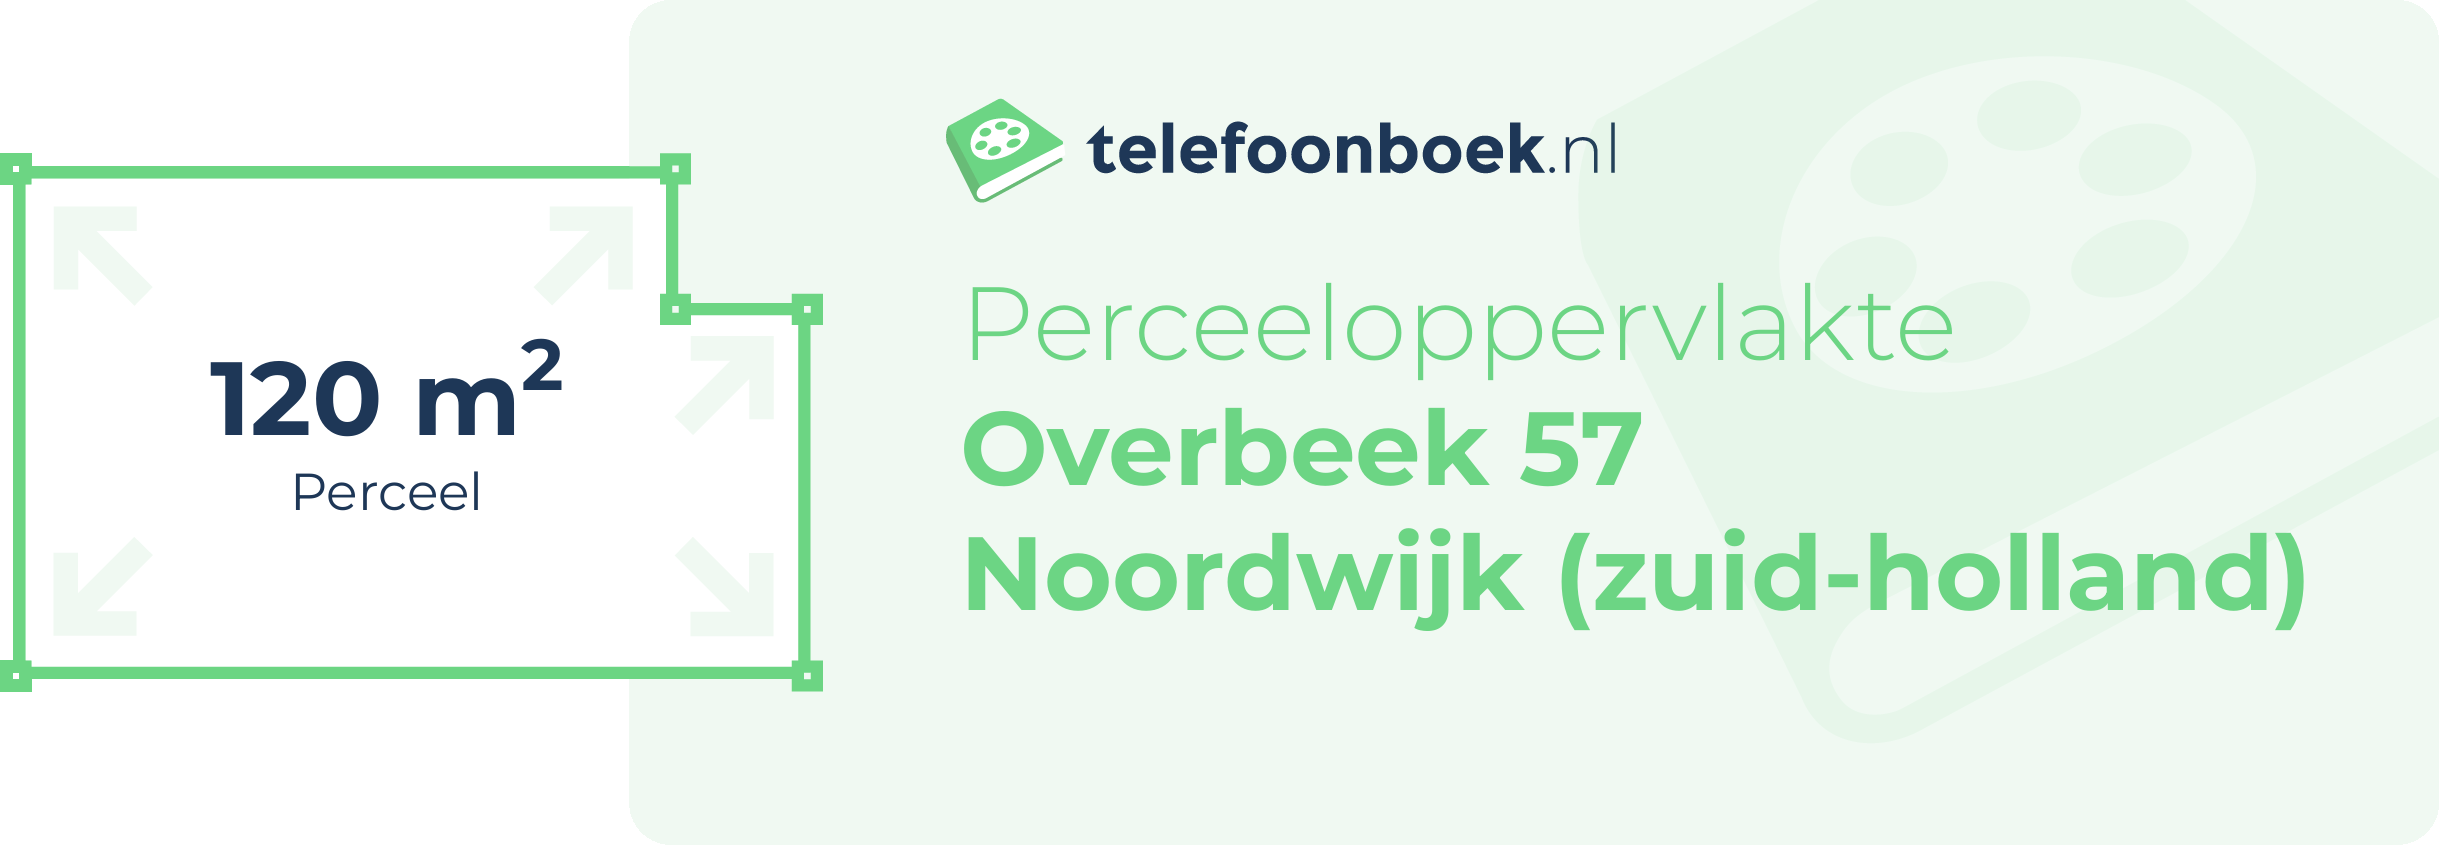 Perceeloppervlakte Overbeek 57 Noordwijk (Zuid-Holland)